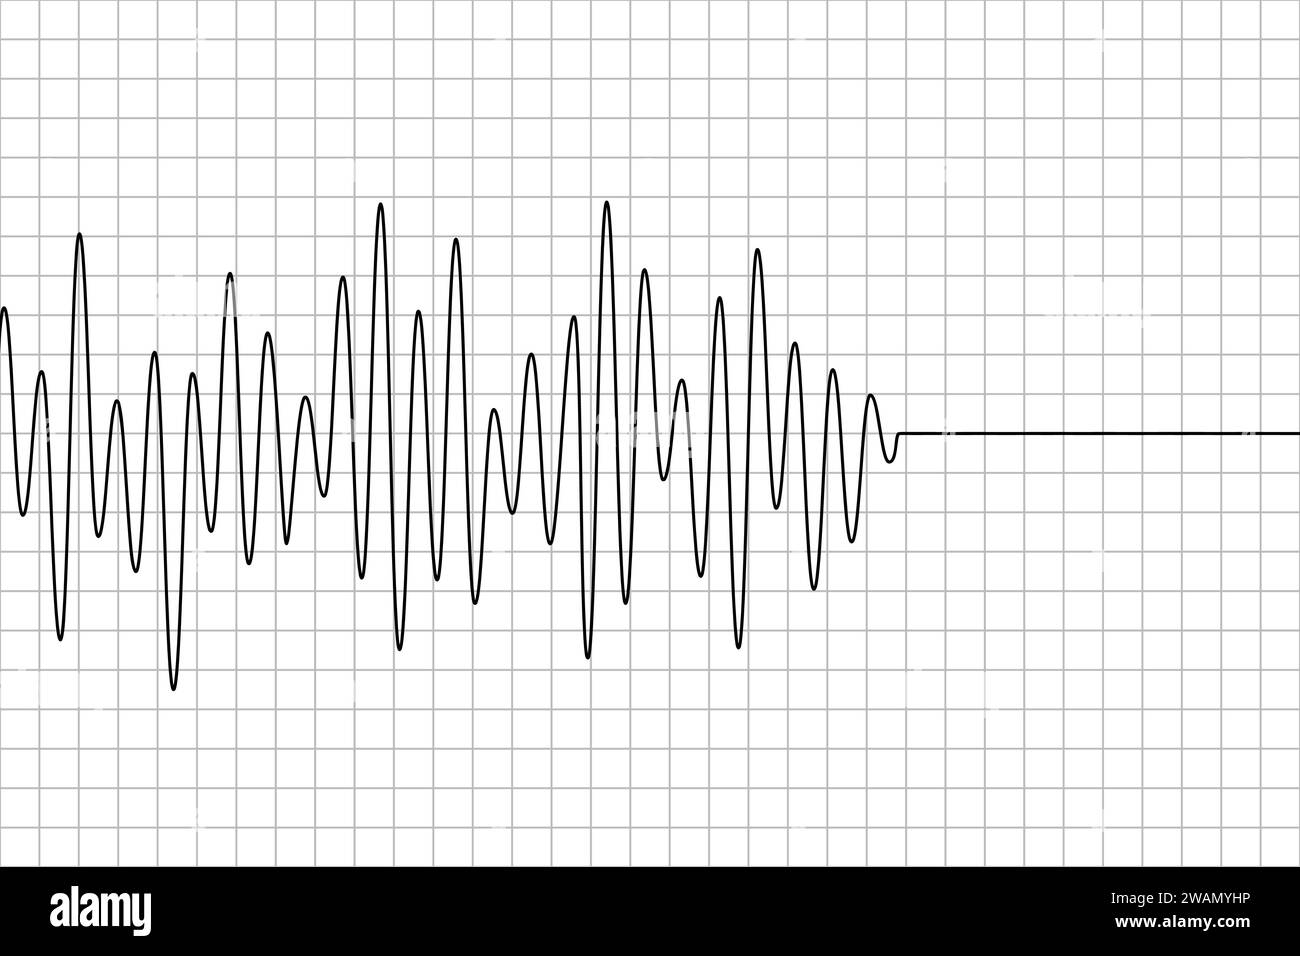 Polygraphkurvenlinie auf Diagrammpapier. Schwarzes Erdbebenmuster isoliert auf weißem Hintergrund. Seismographen-Symbol. Detektorlage. Richterskala. Seismometer Stock Vektor